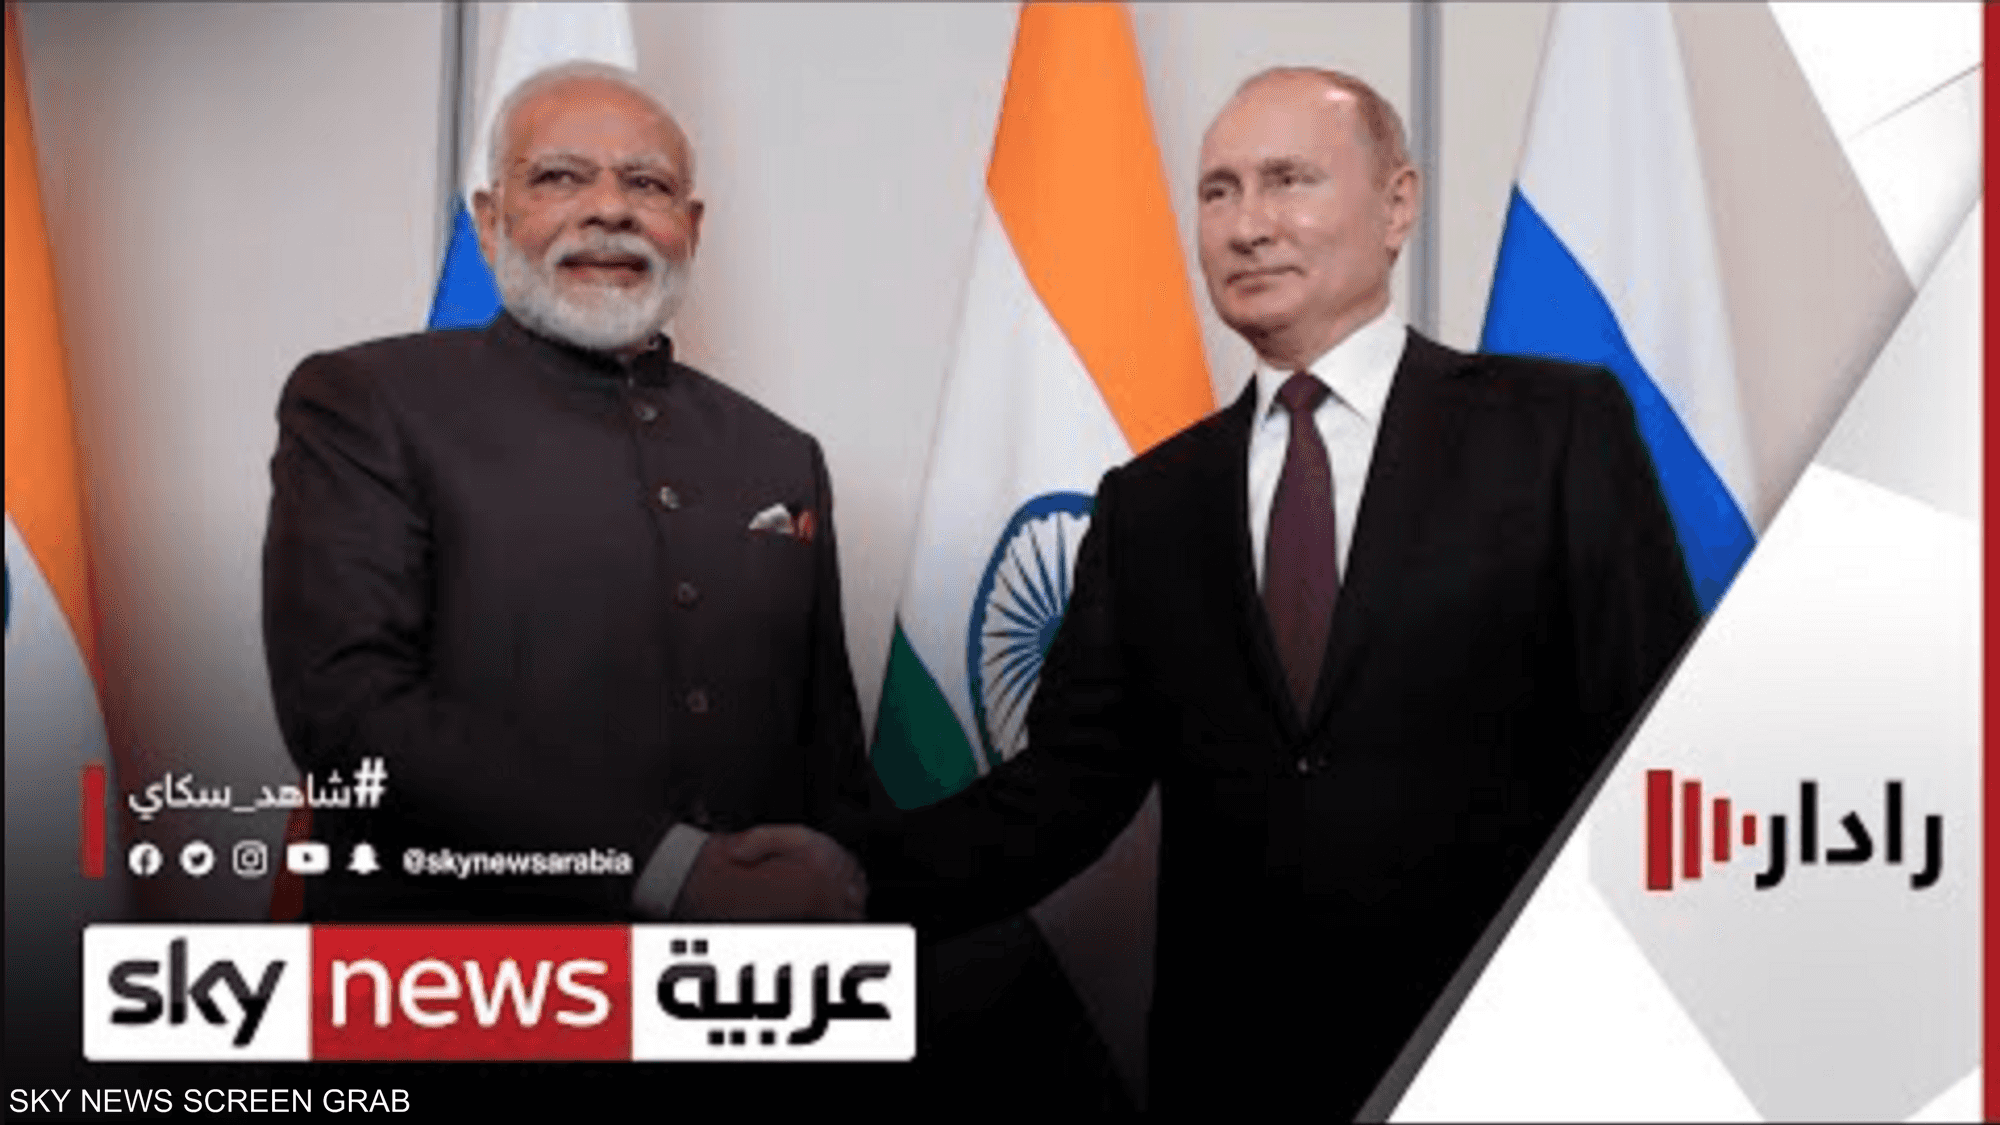 زيارة رمزية.. بوتين إلى الهند لاحتواء تقارب واشنطن ونيودلهي